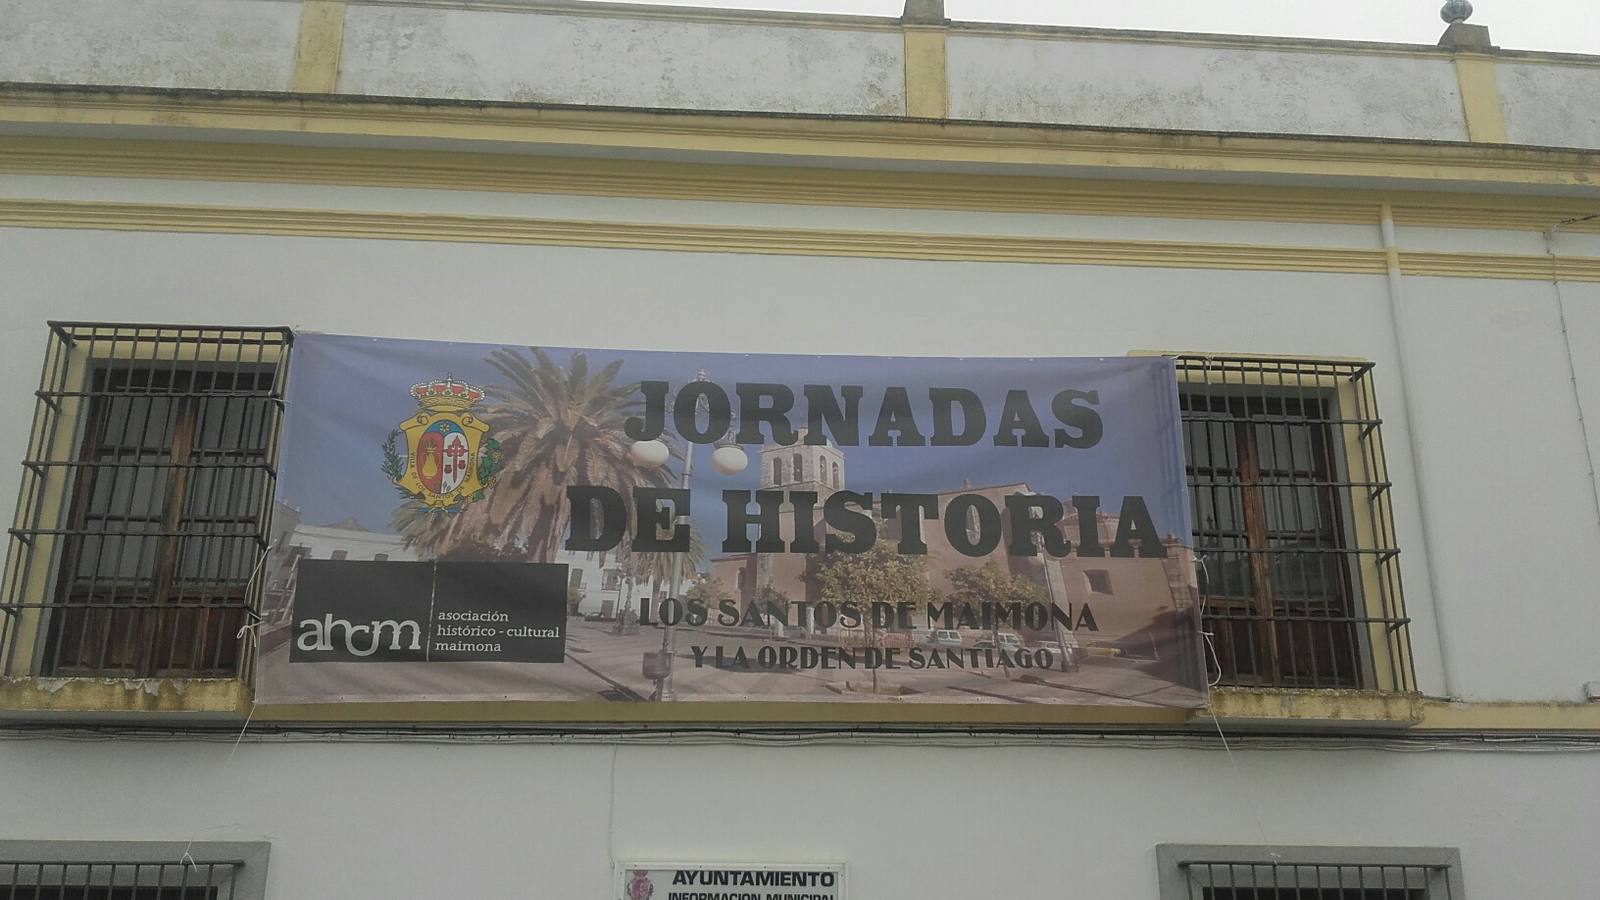 Jornadas de Historia reflejadas en la fachada de la Casa de la Cultura 